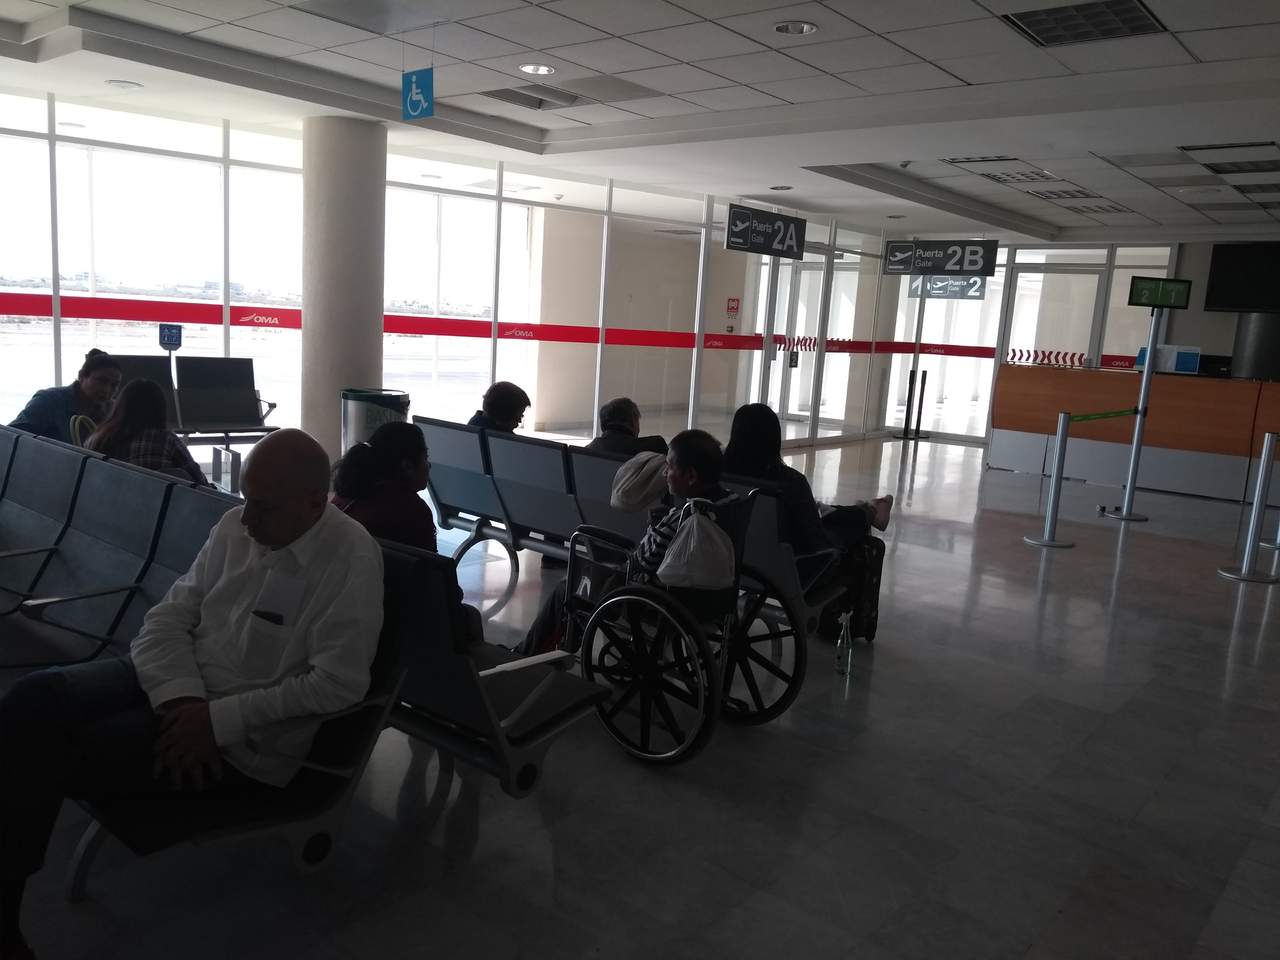 Llevan 7 horas esperando un vuelo en aeropuerto de Torreón. Noticias en tiempo real